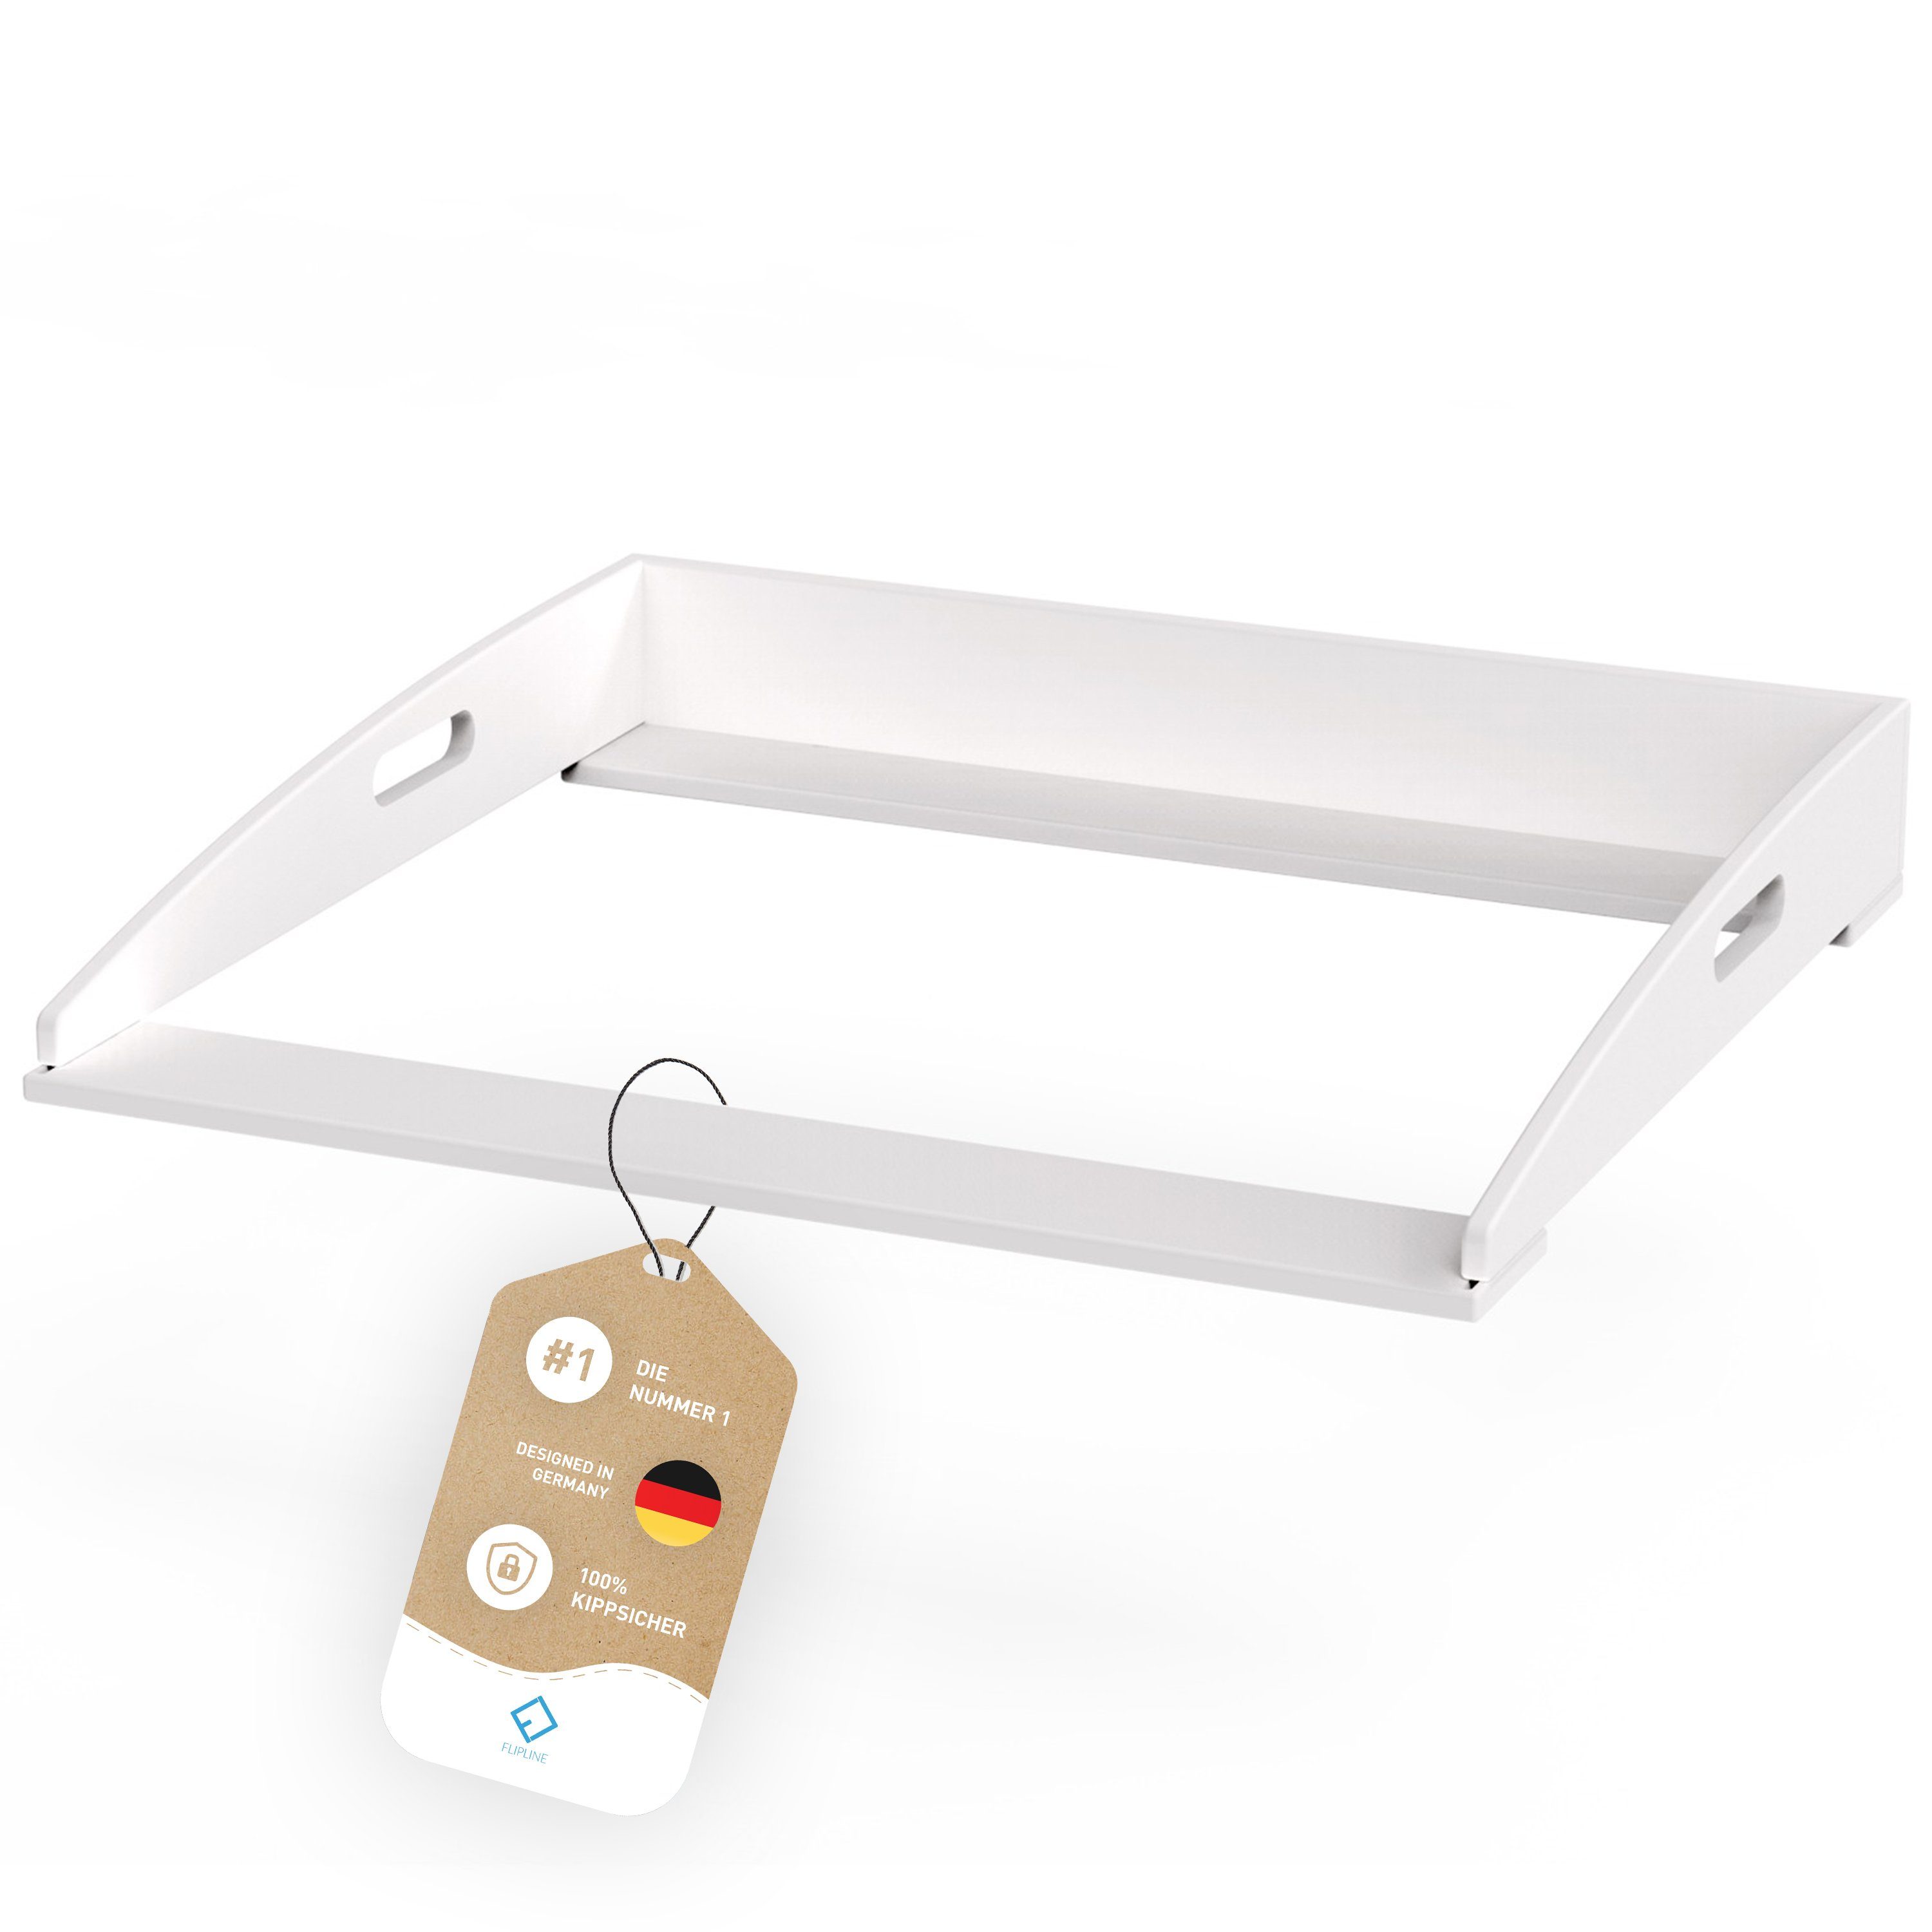 FLIPLINE® Wickelaufsatz für IKEA Hemnes Kommode [85x75x13cm], INKL. 2-Stufen-Sicherheit an Wand und Kommode | Wickelaufsätze